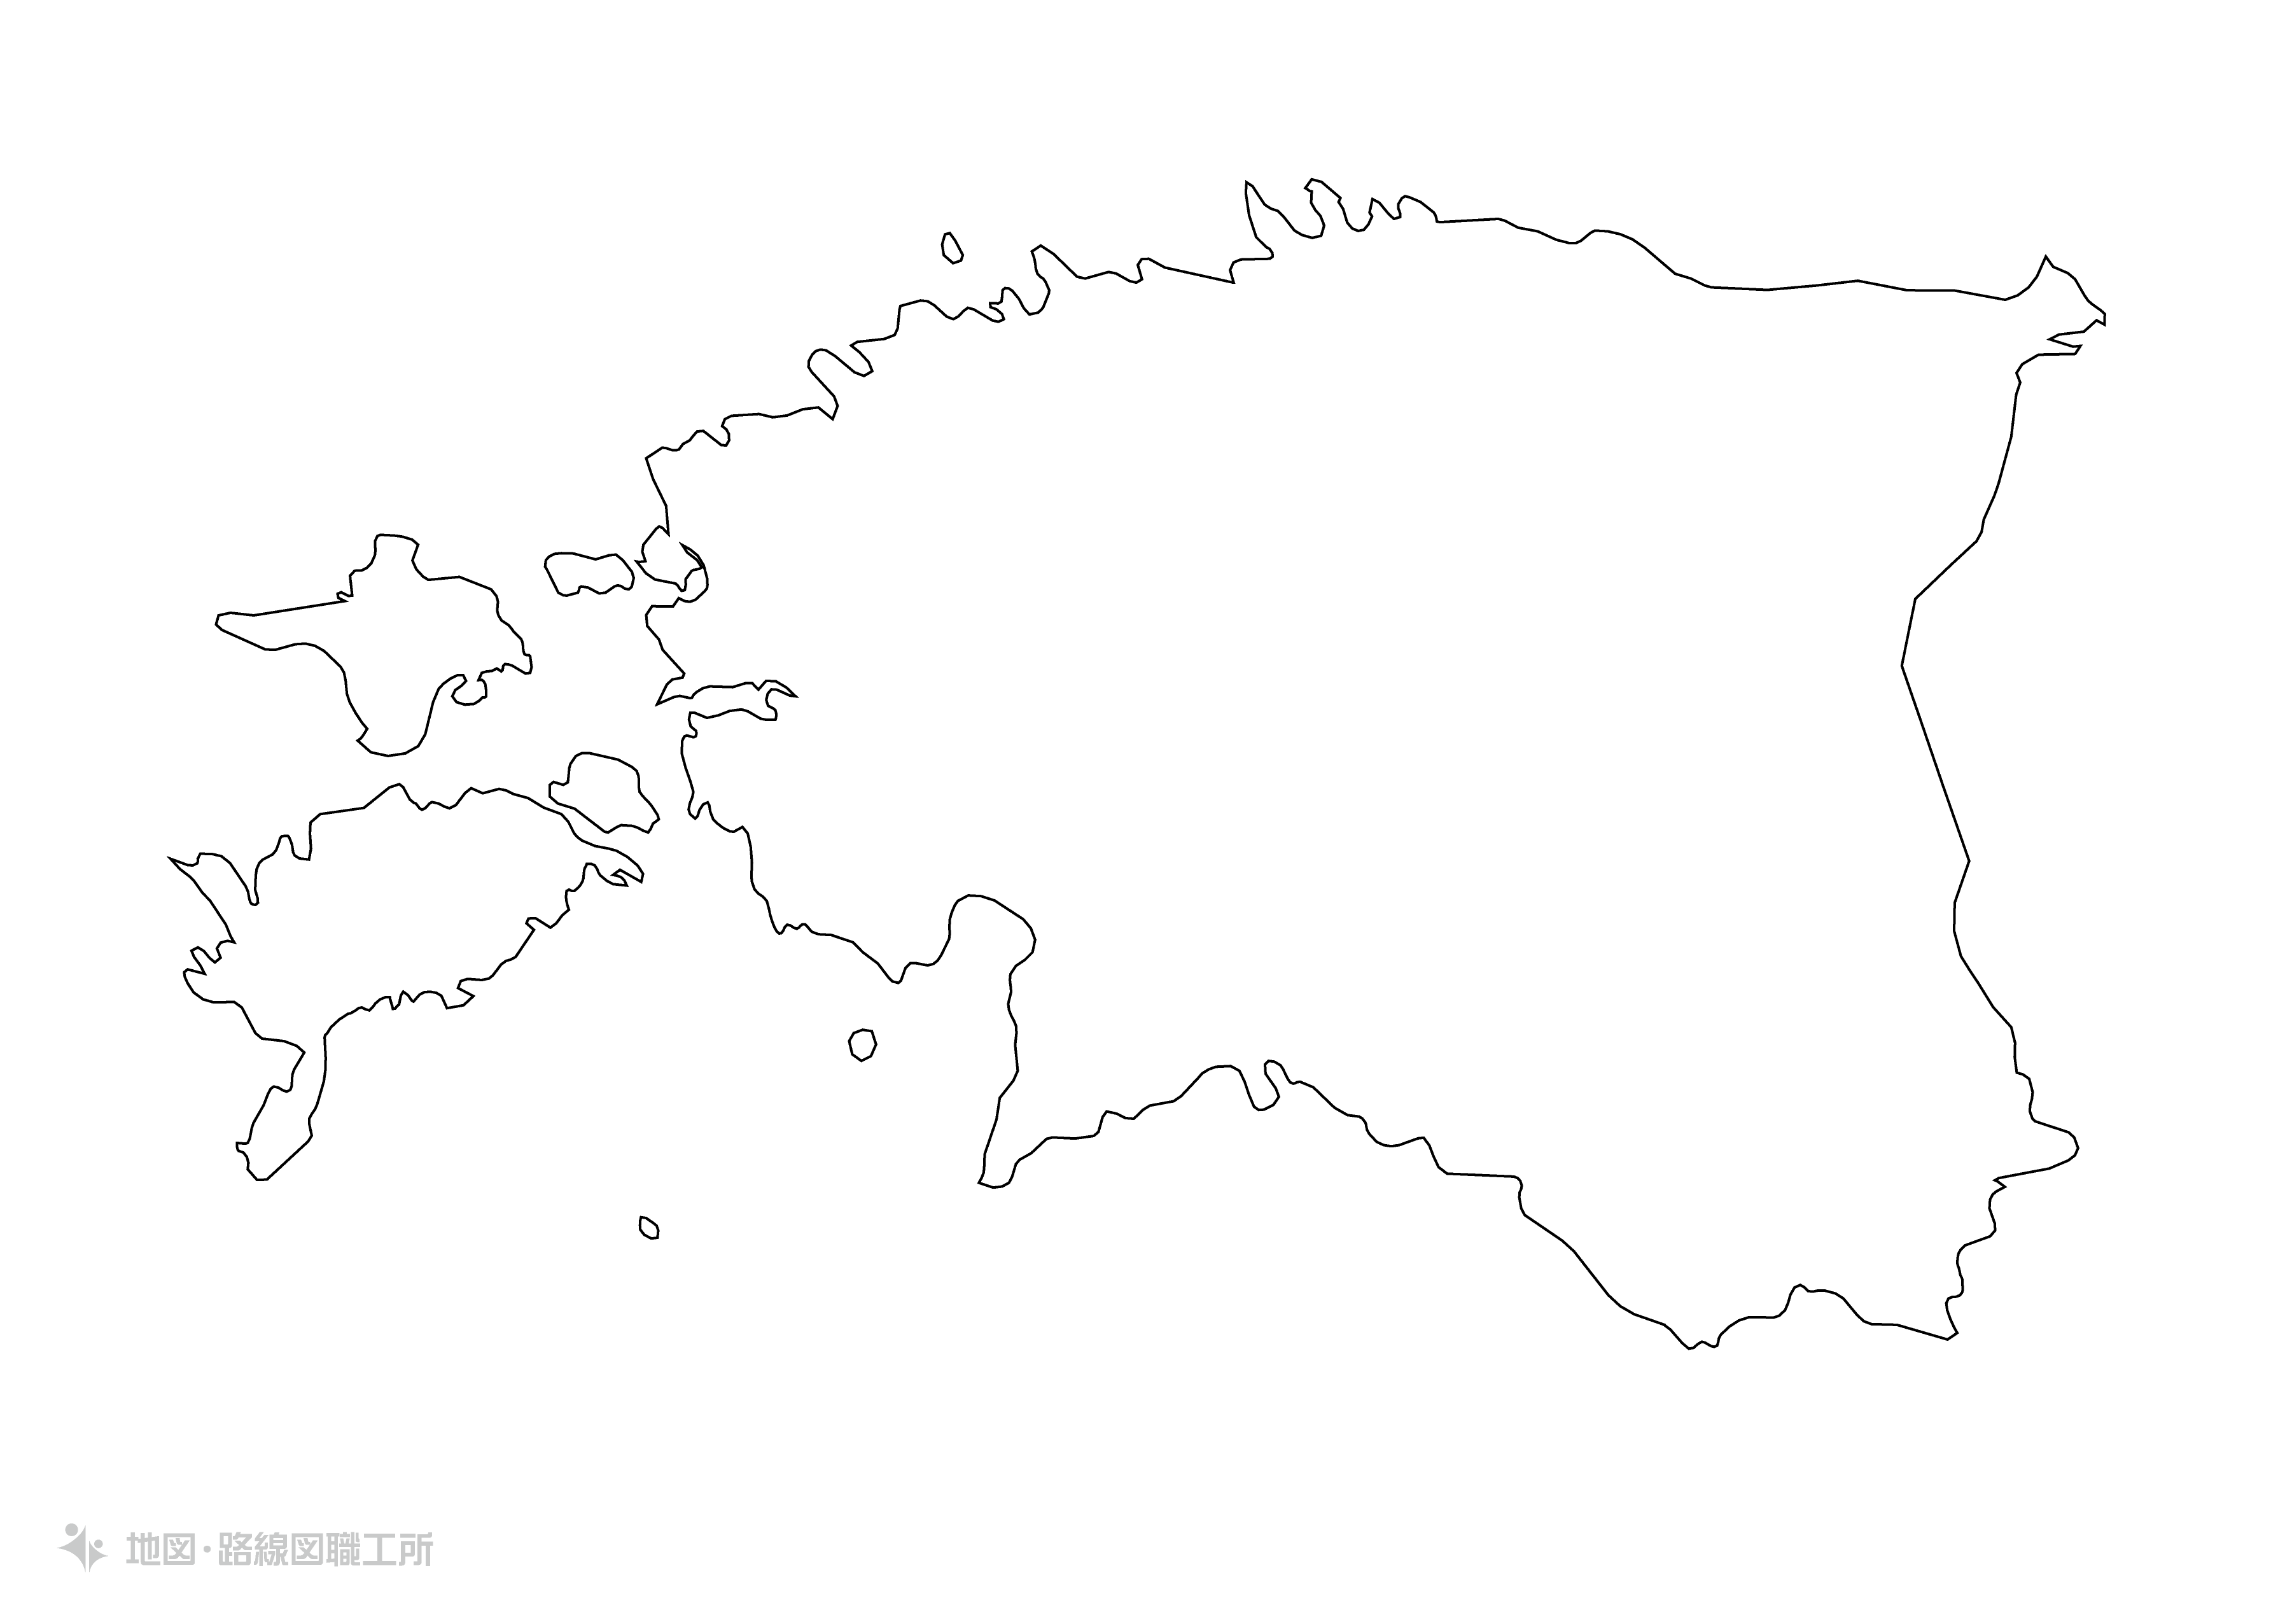 エストニア共和国の白地図 首都名あり を無料ダウンロード